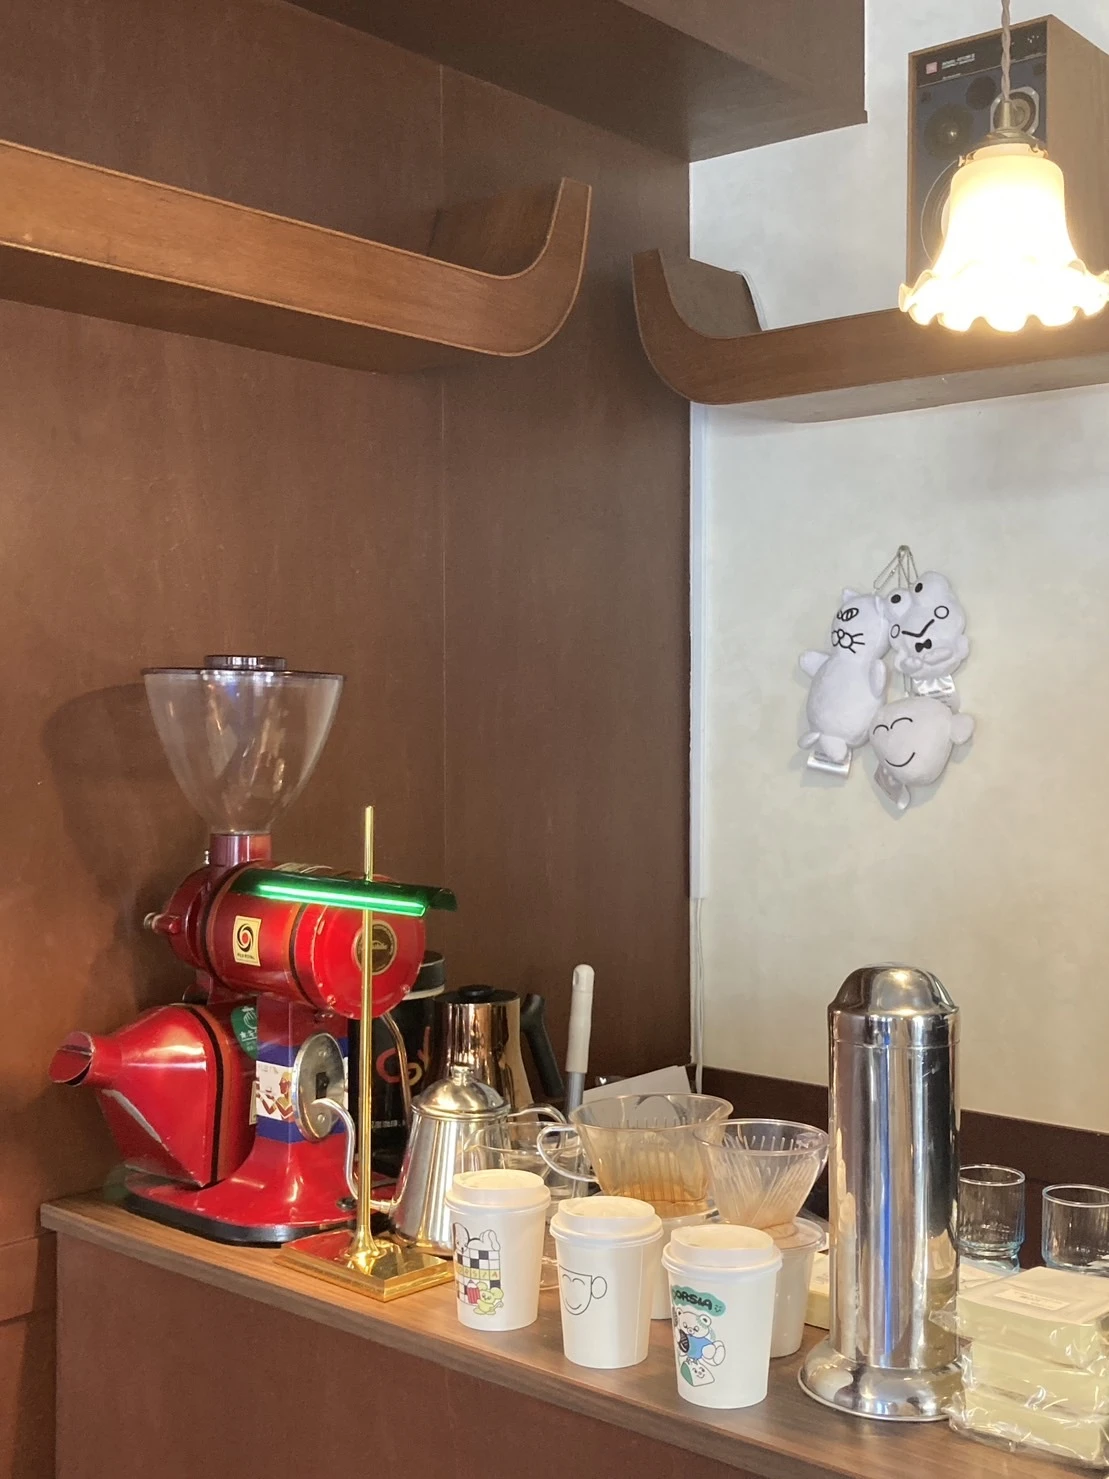 赤いコーヒーマシンなどが置いてありおしゃれな雰囲気の店内の画像。